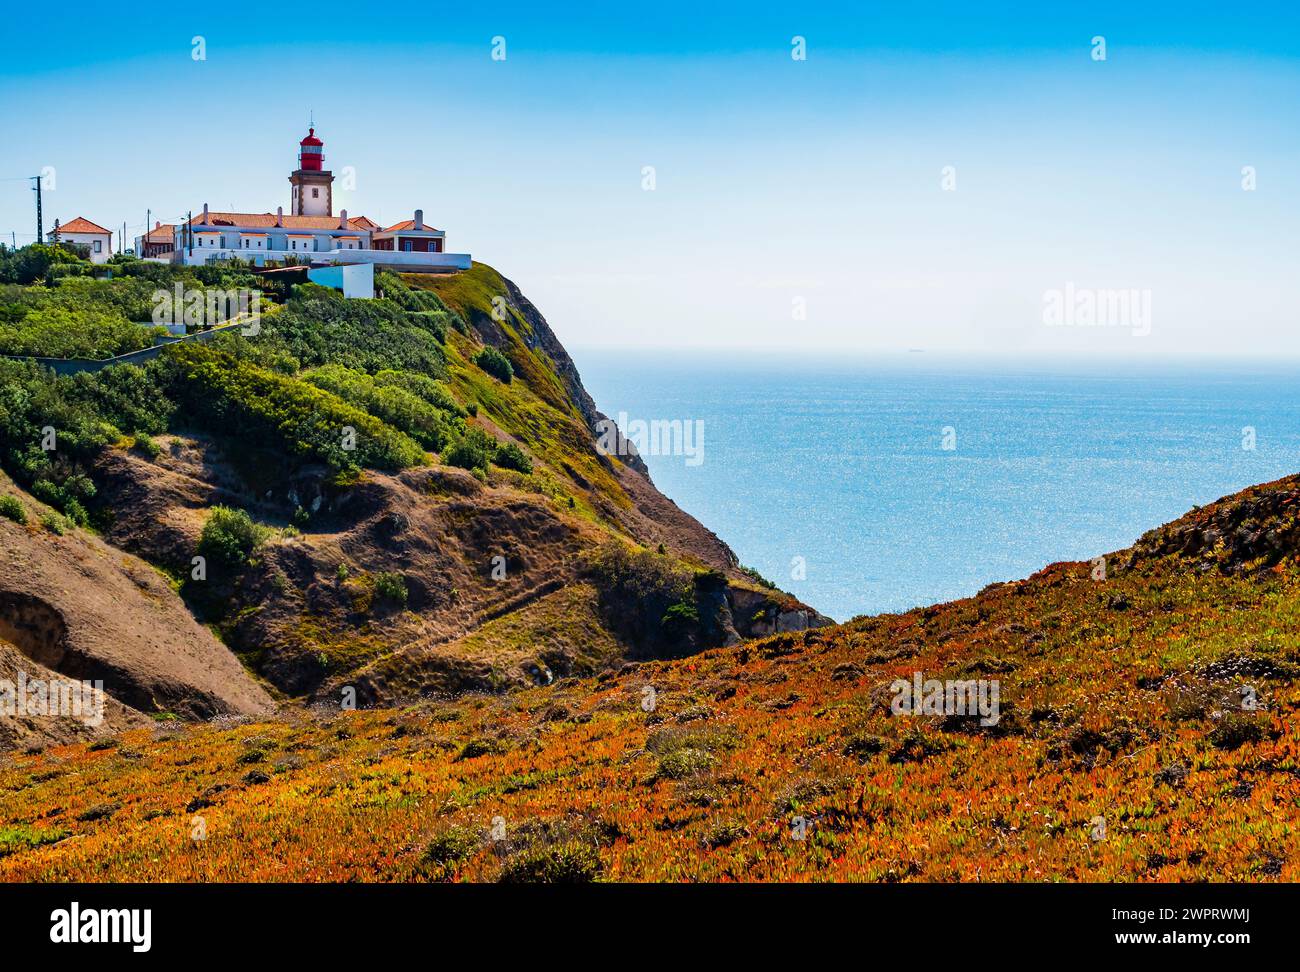 Paysage magnifique avec phare de Cabo da Roca surplombant le promontoire vers l'océan Atlantique, Portugal Banque D'Images